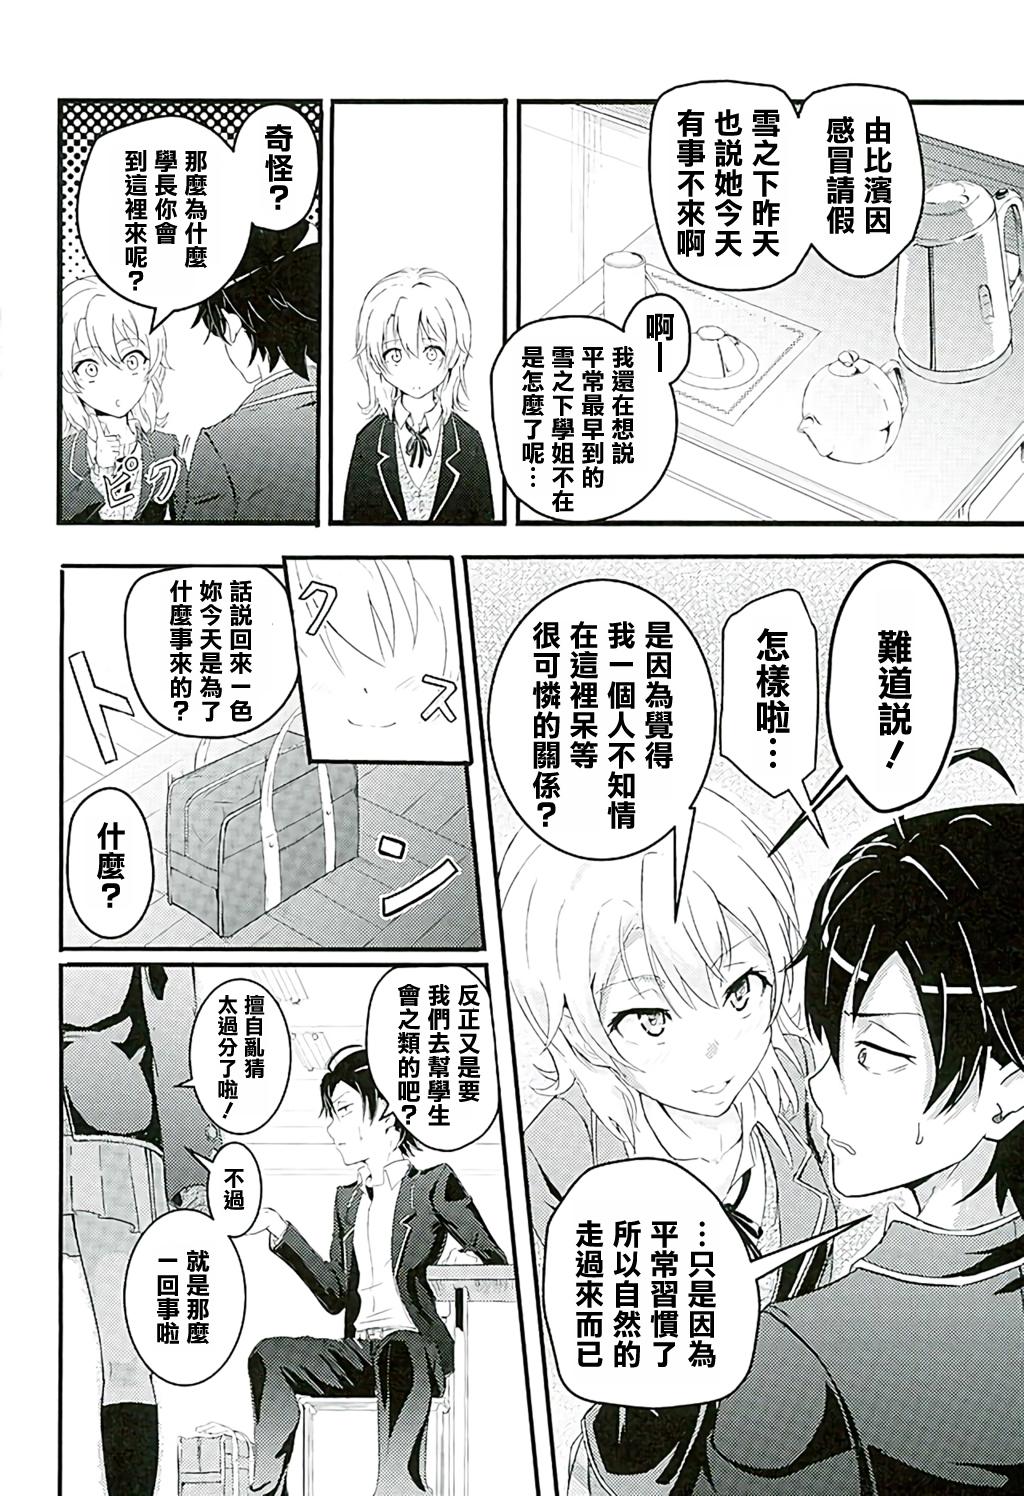 Loira Iroha - Yahari ore no seishun love come wa machigatteiru Class - Page 4